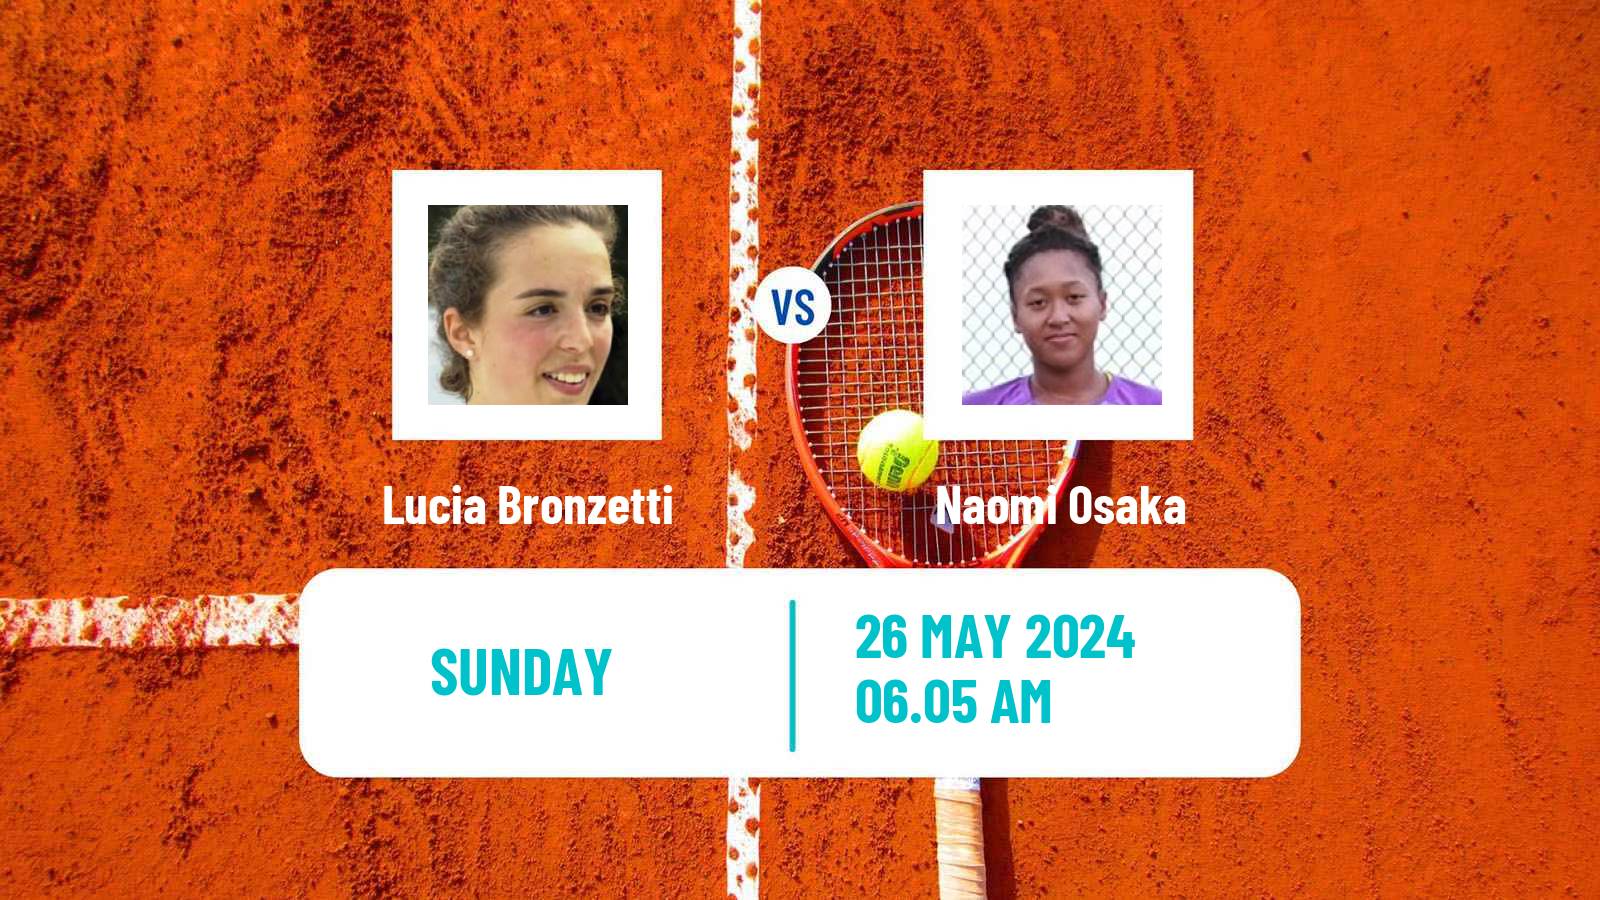 Tennis WTA Roland Garros Lucia Bronzetti - Naomi Osaka